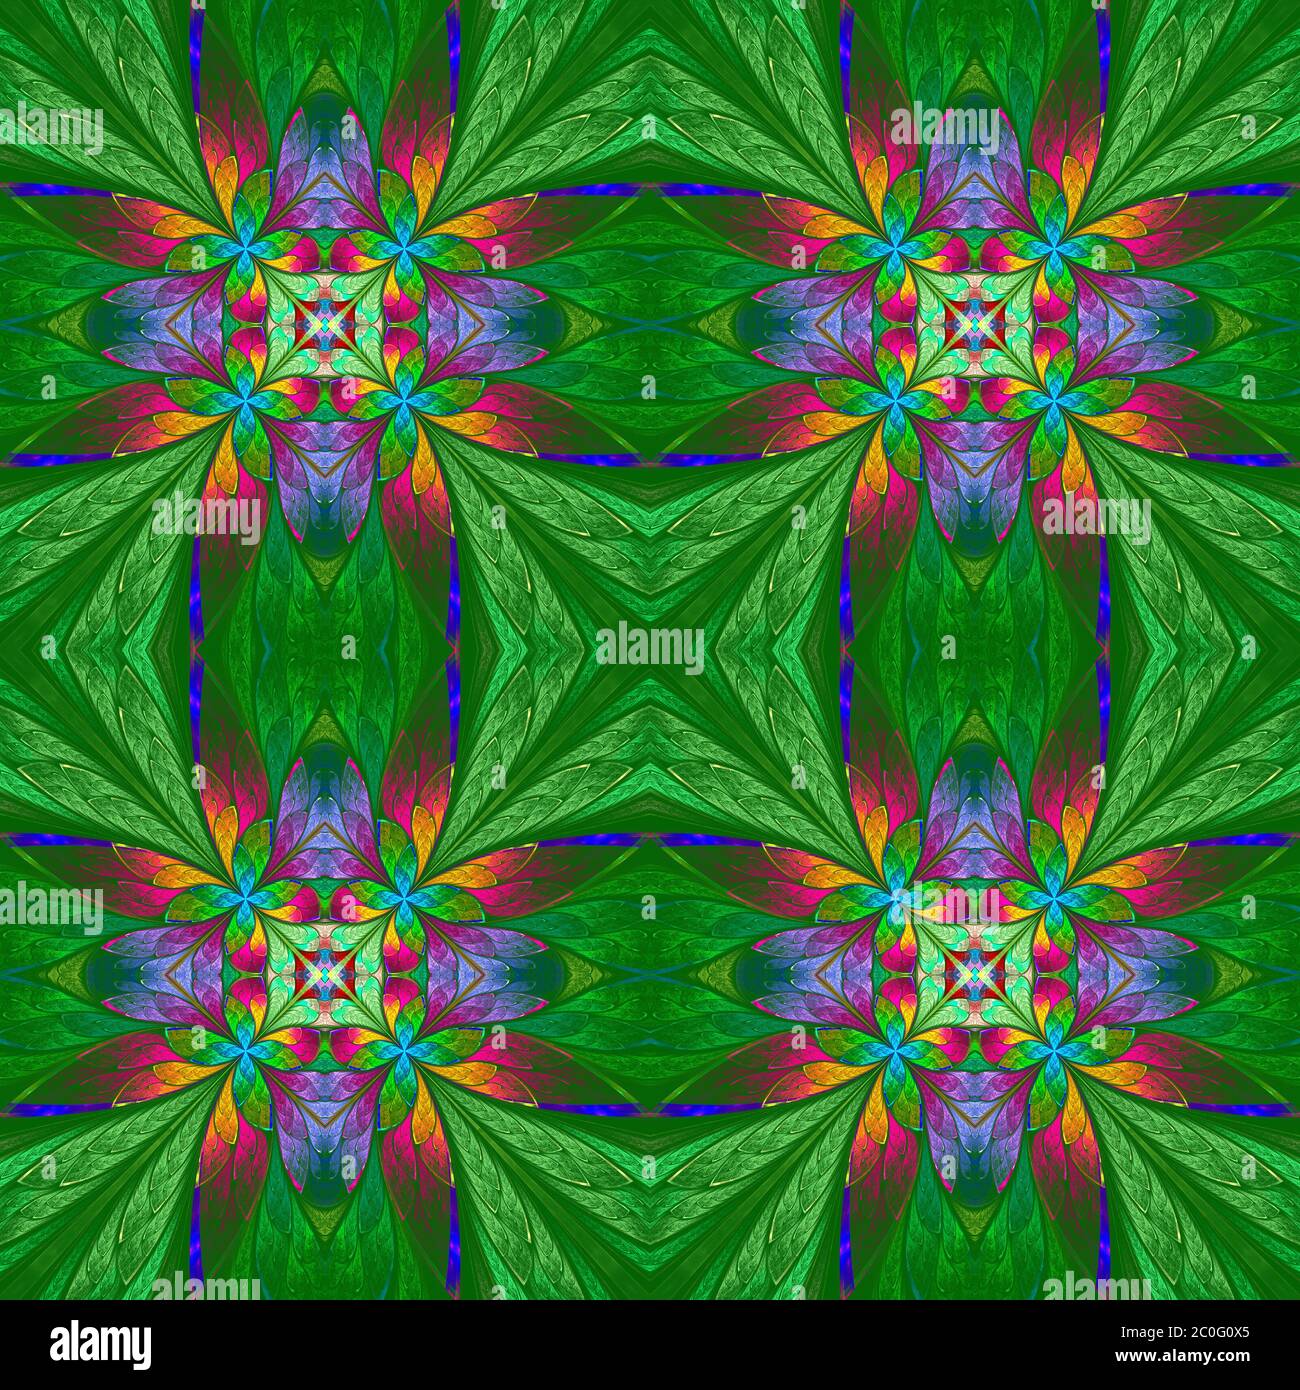 Motif floral multicolore symétrique de style vitrail sur le dos vert. Graphiques générés par ordinateur. Banque D'Images